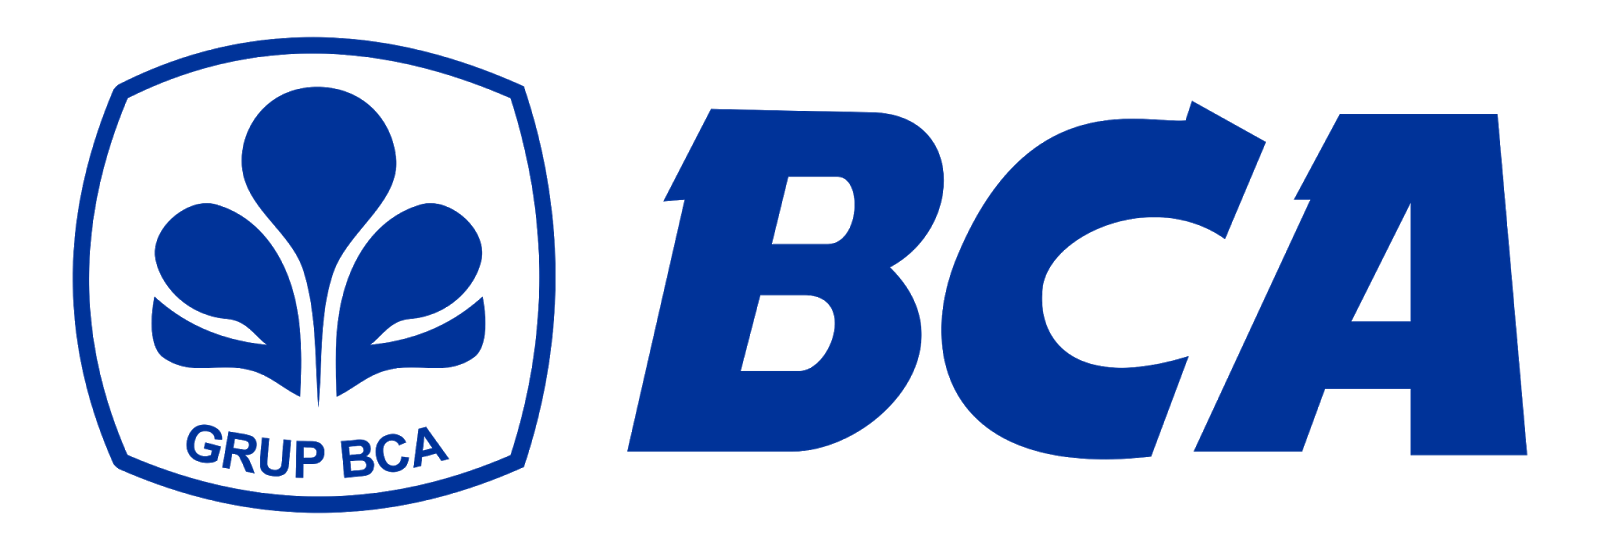 logo-bcapng-32694-1-1.png